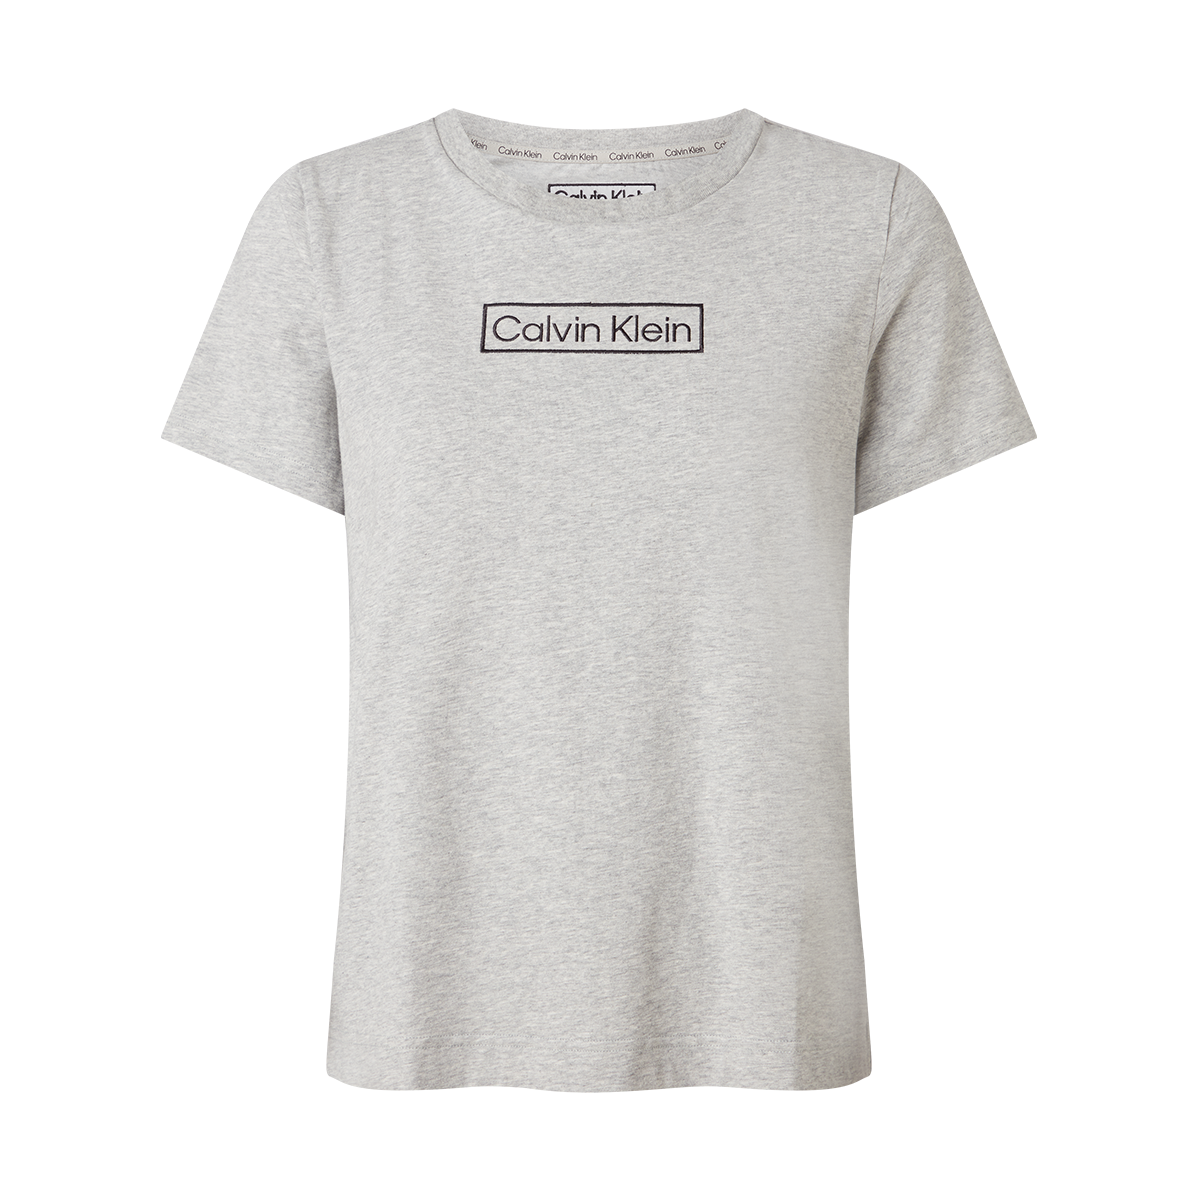 Calvin Klein Crew Neck T-shirt, Farve: Grå, Størrelse: S, Dame